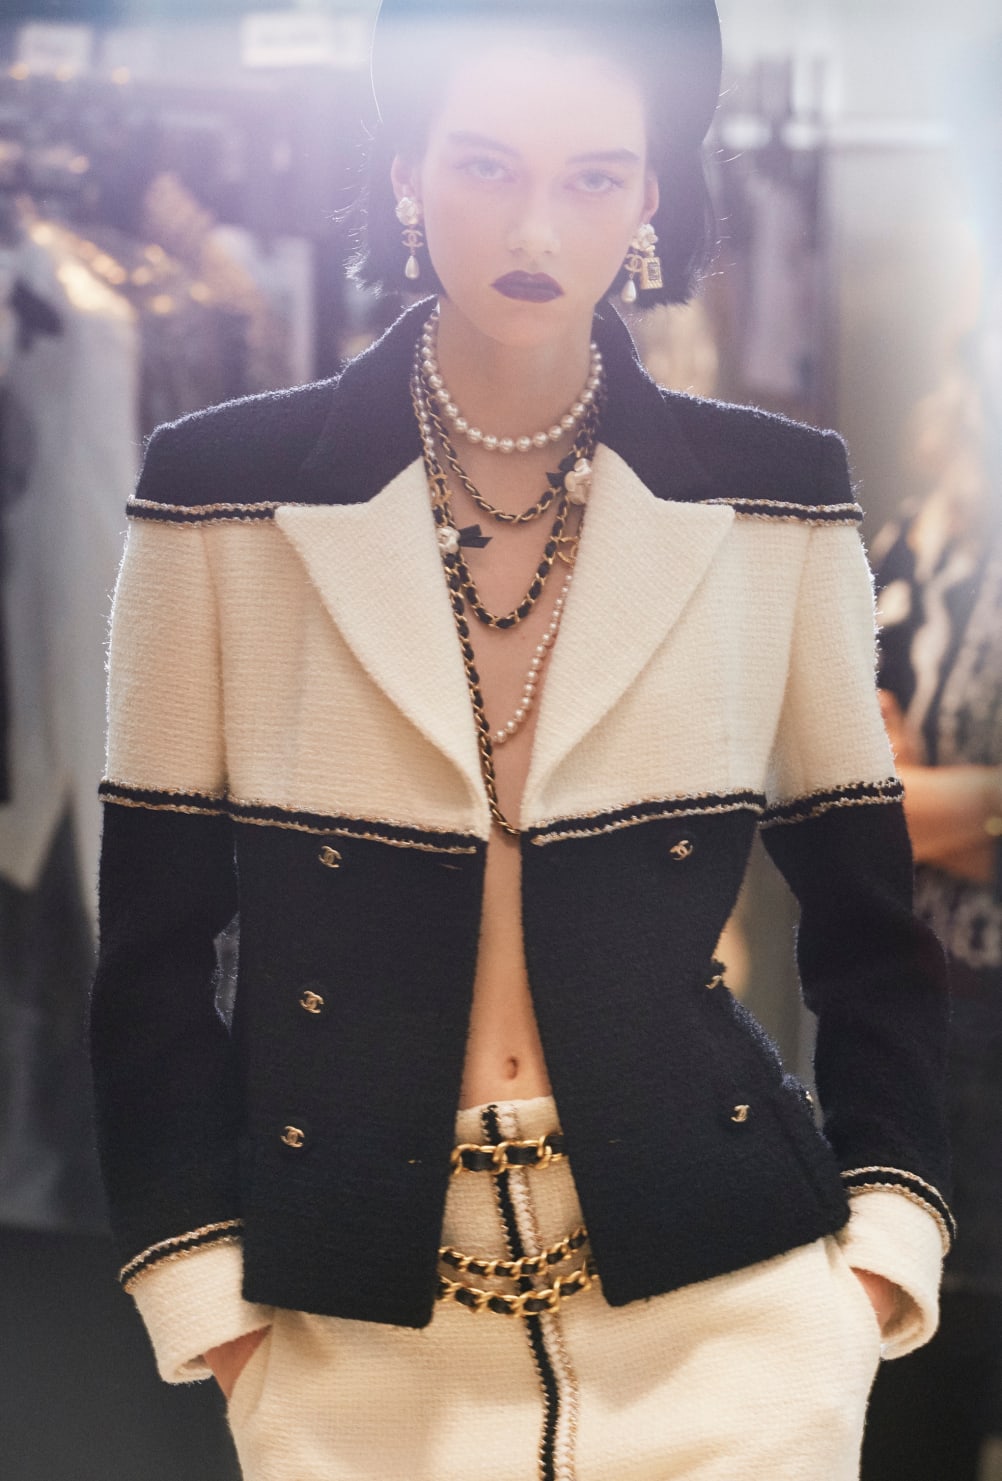 法国女星Alma Jodorowsky 也是Chanel华丽世界观的代言面孔之一